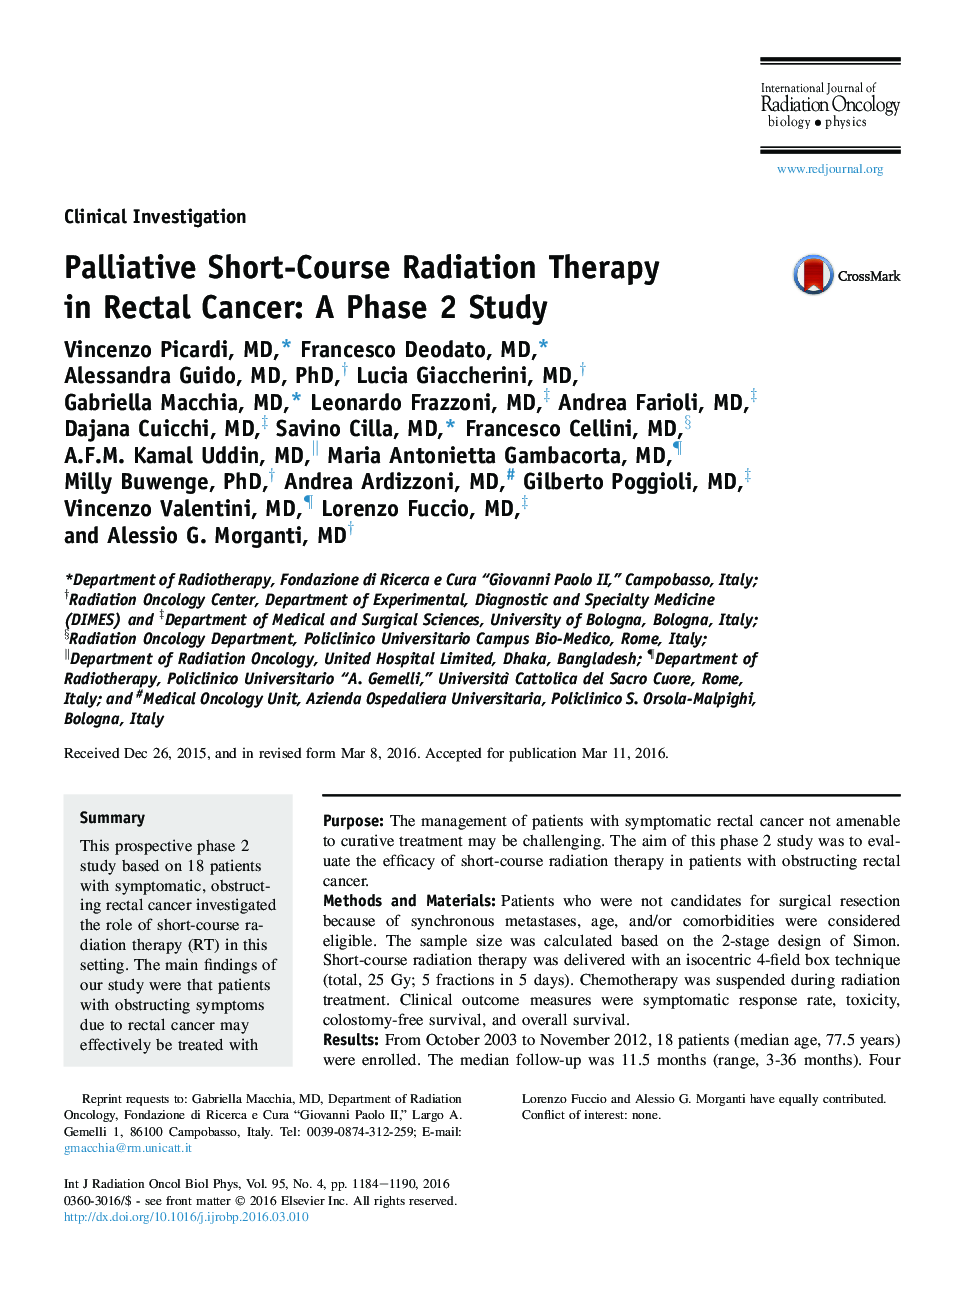 درمان پرتو درمانی کوتاه مدت در سرطان رکتوم: مطالعه فاز 2 